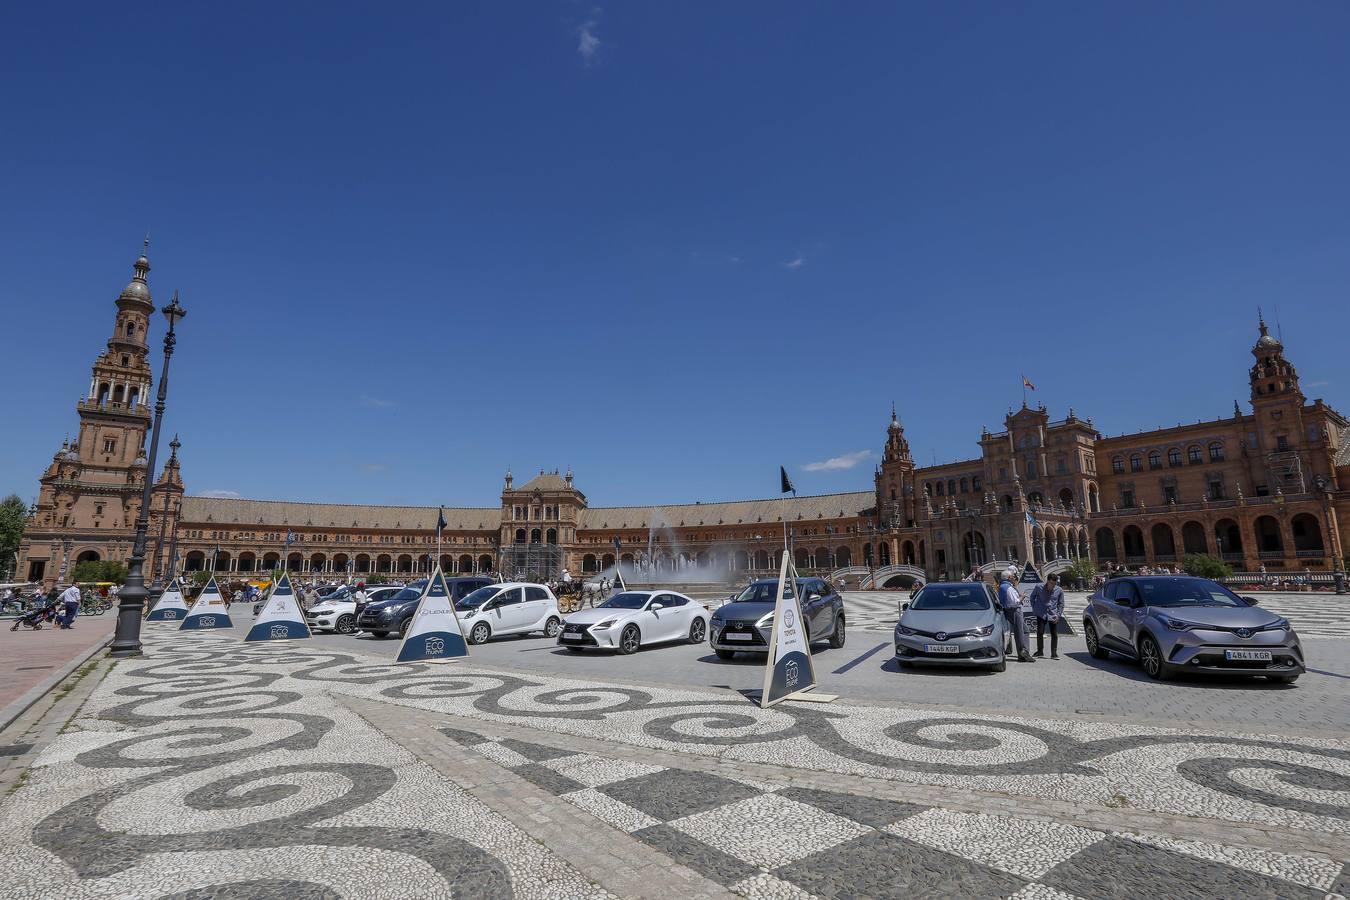 Ecomueve, una cita en Sevilla con la movilidad sostenible